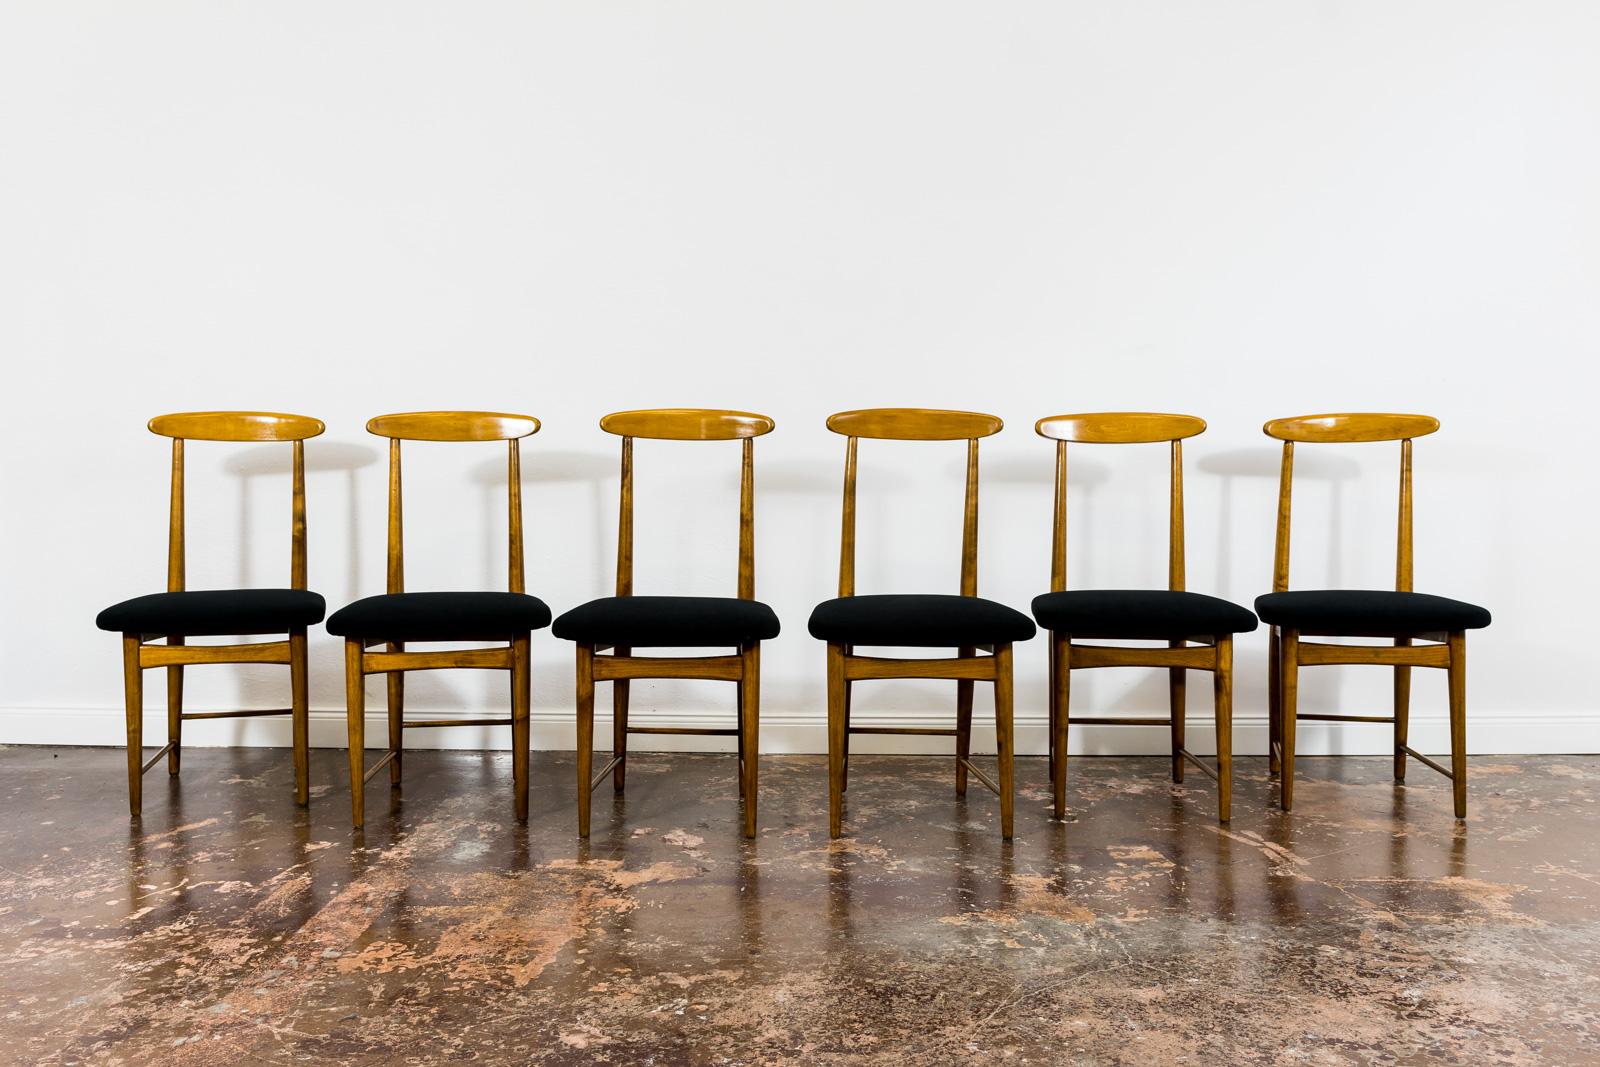 Satz von 6 Esszimmerstühlen entworfen von Bernard Malendowicz 1960er Jahre, Polen.
Die Stühle wurden vollständig restauriert und neu lackiert.
Gepolsterte Sitze aus schwarzem, pflegeleichtem Stoff.